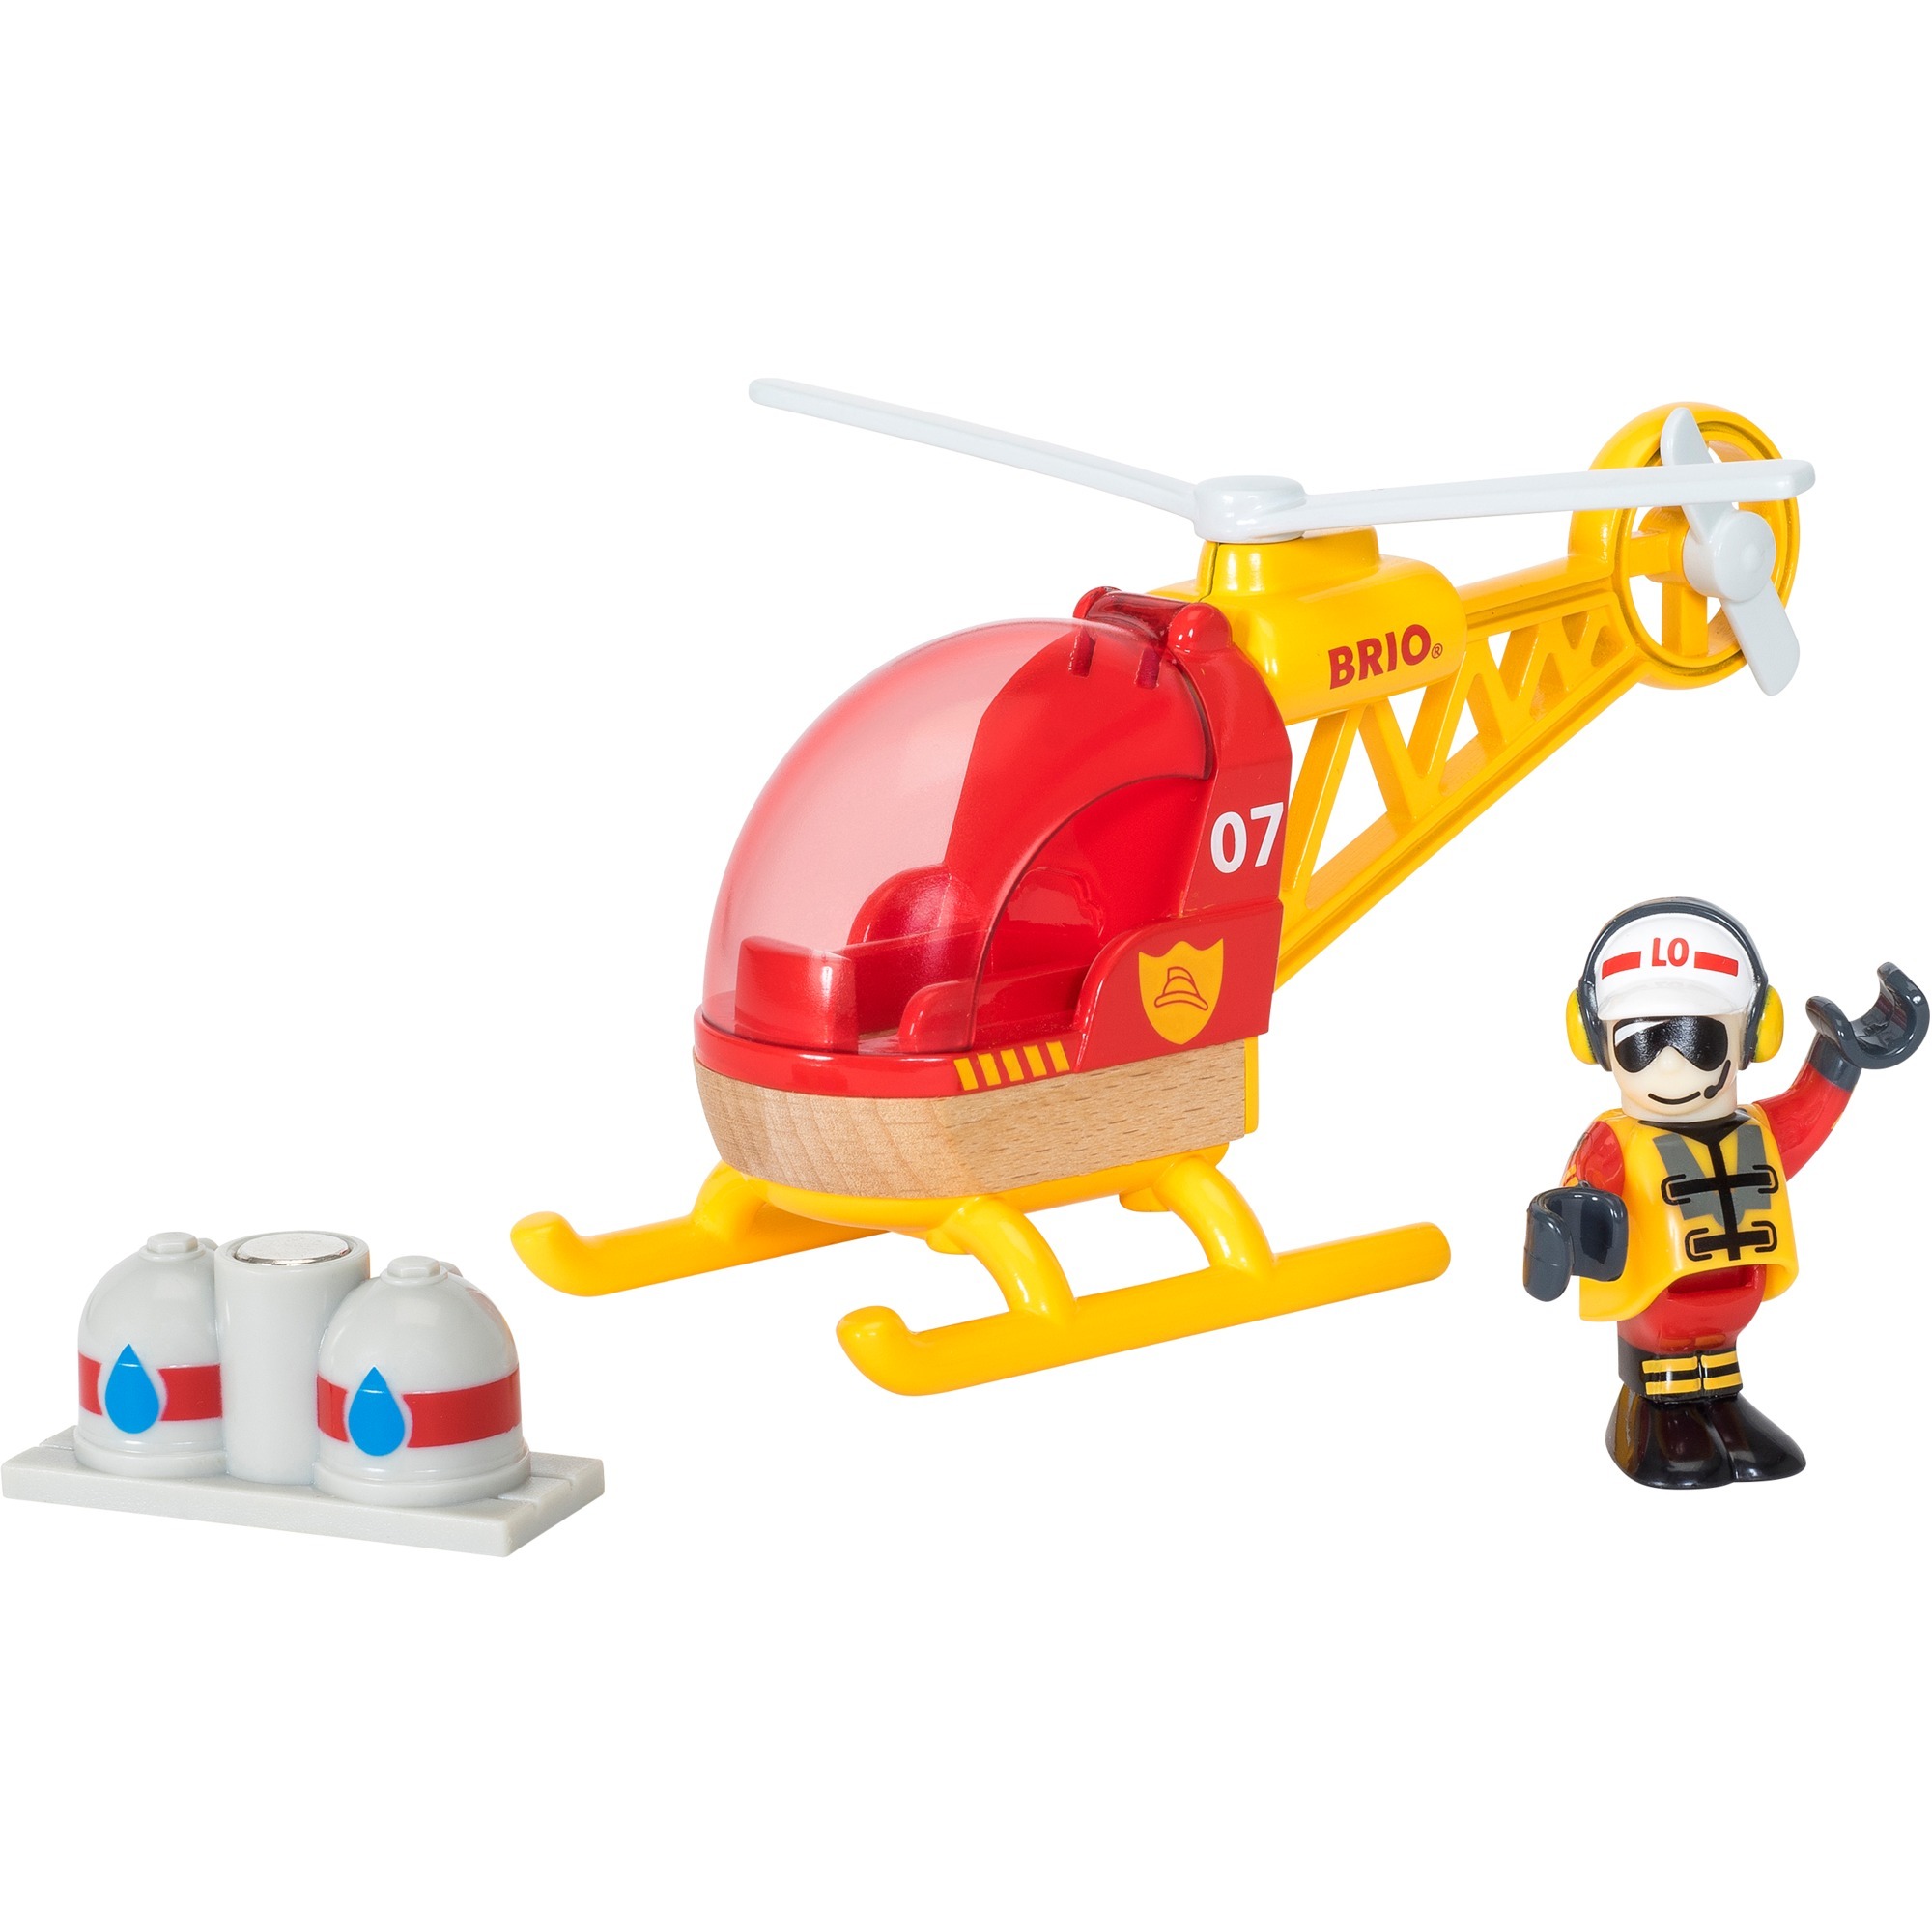 Image of Alternate - World Feuerwehr-Hubschrauber, Spielfahrzeug online einkaufen bei Alternate